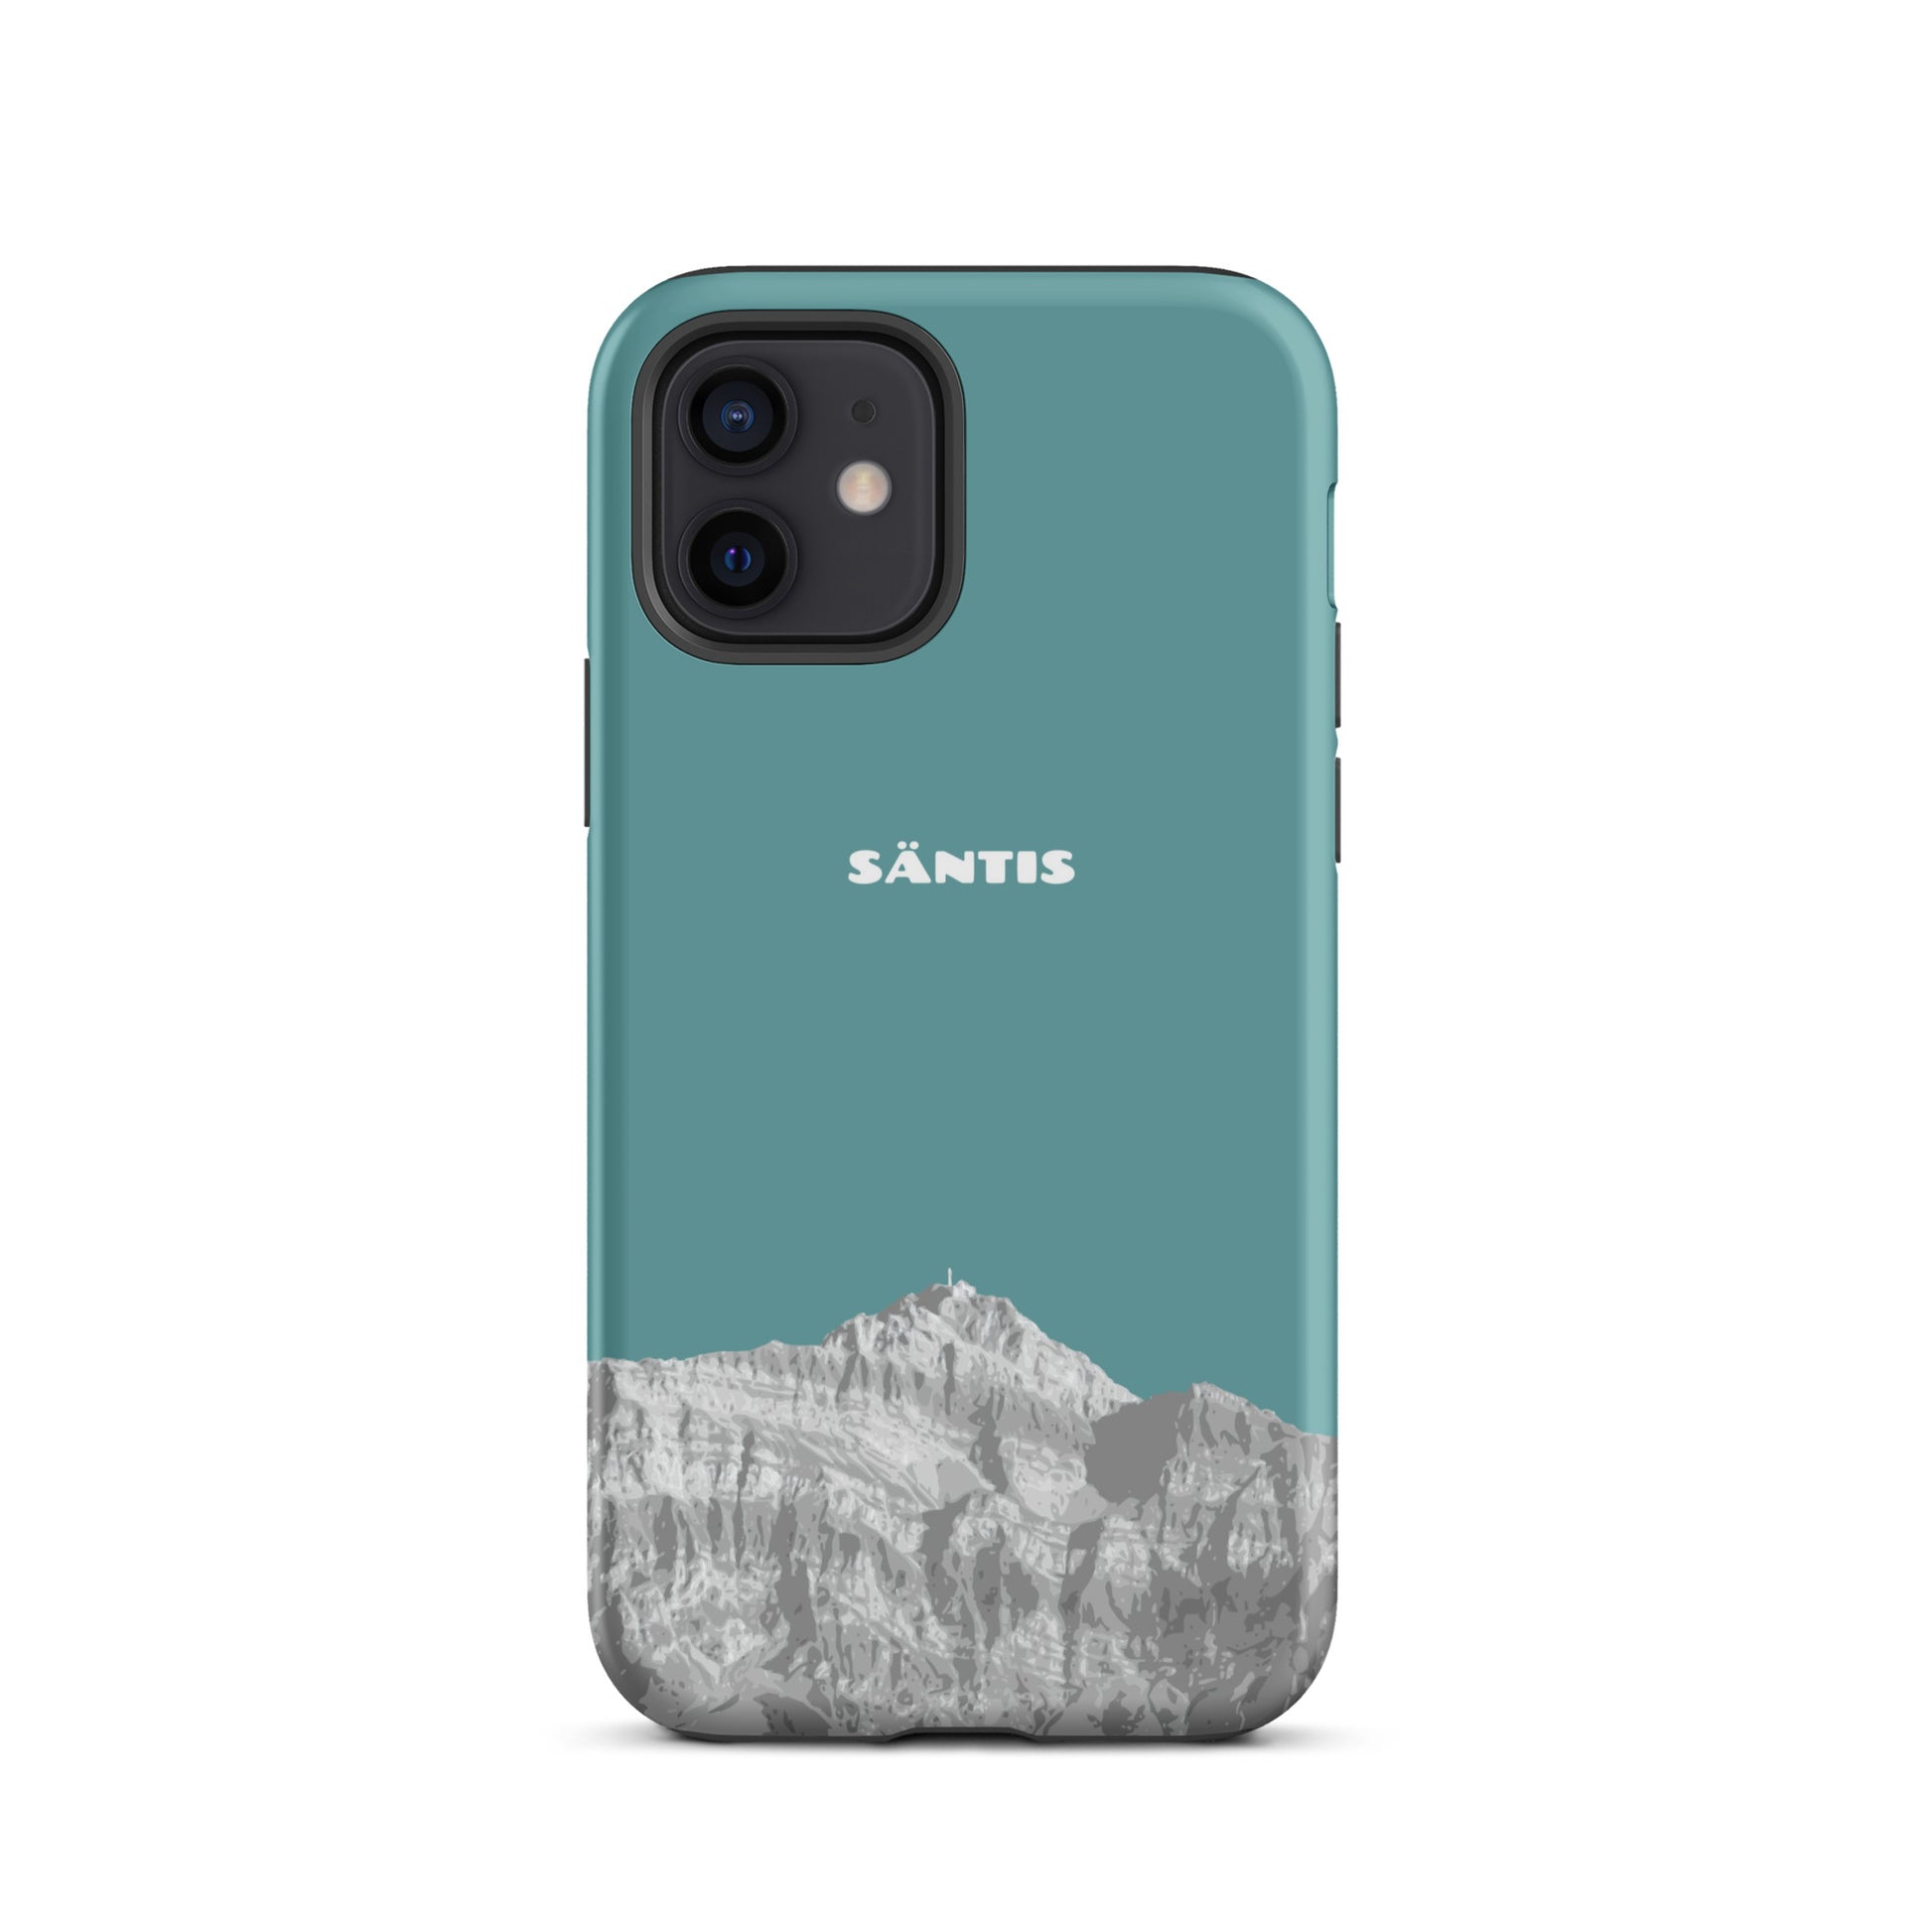 Hülle für das iPhone 12 von Apple in der Farbe Kadettenblau, dass den Säntis im Alpstein zeigt.